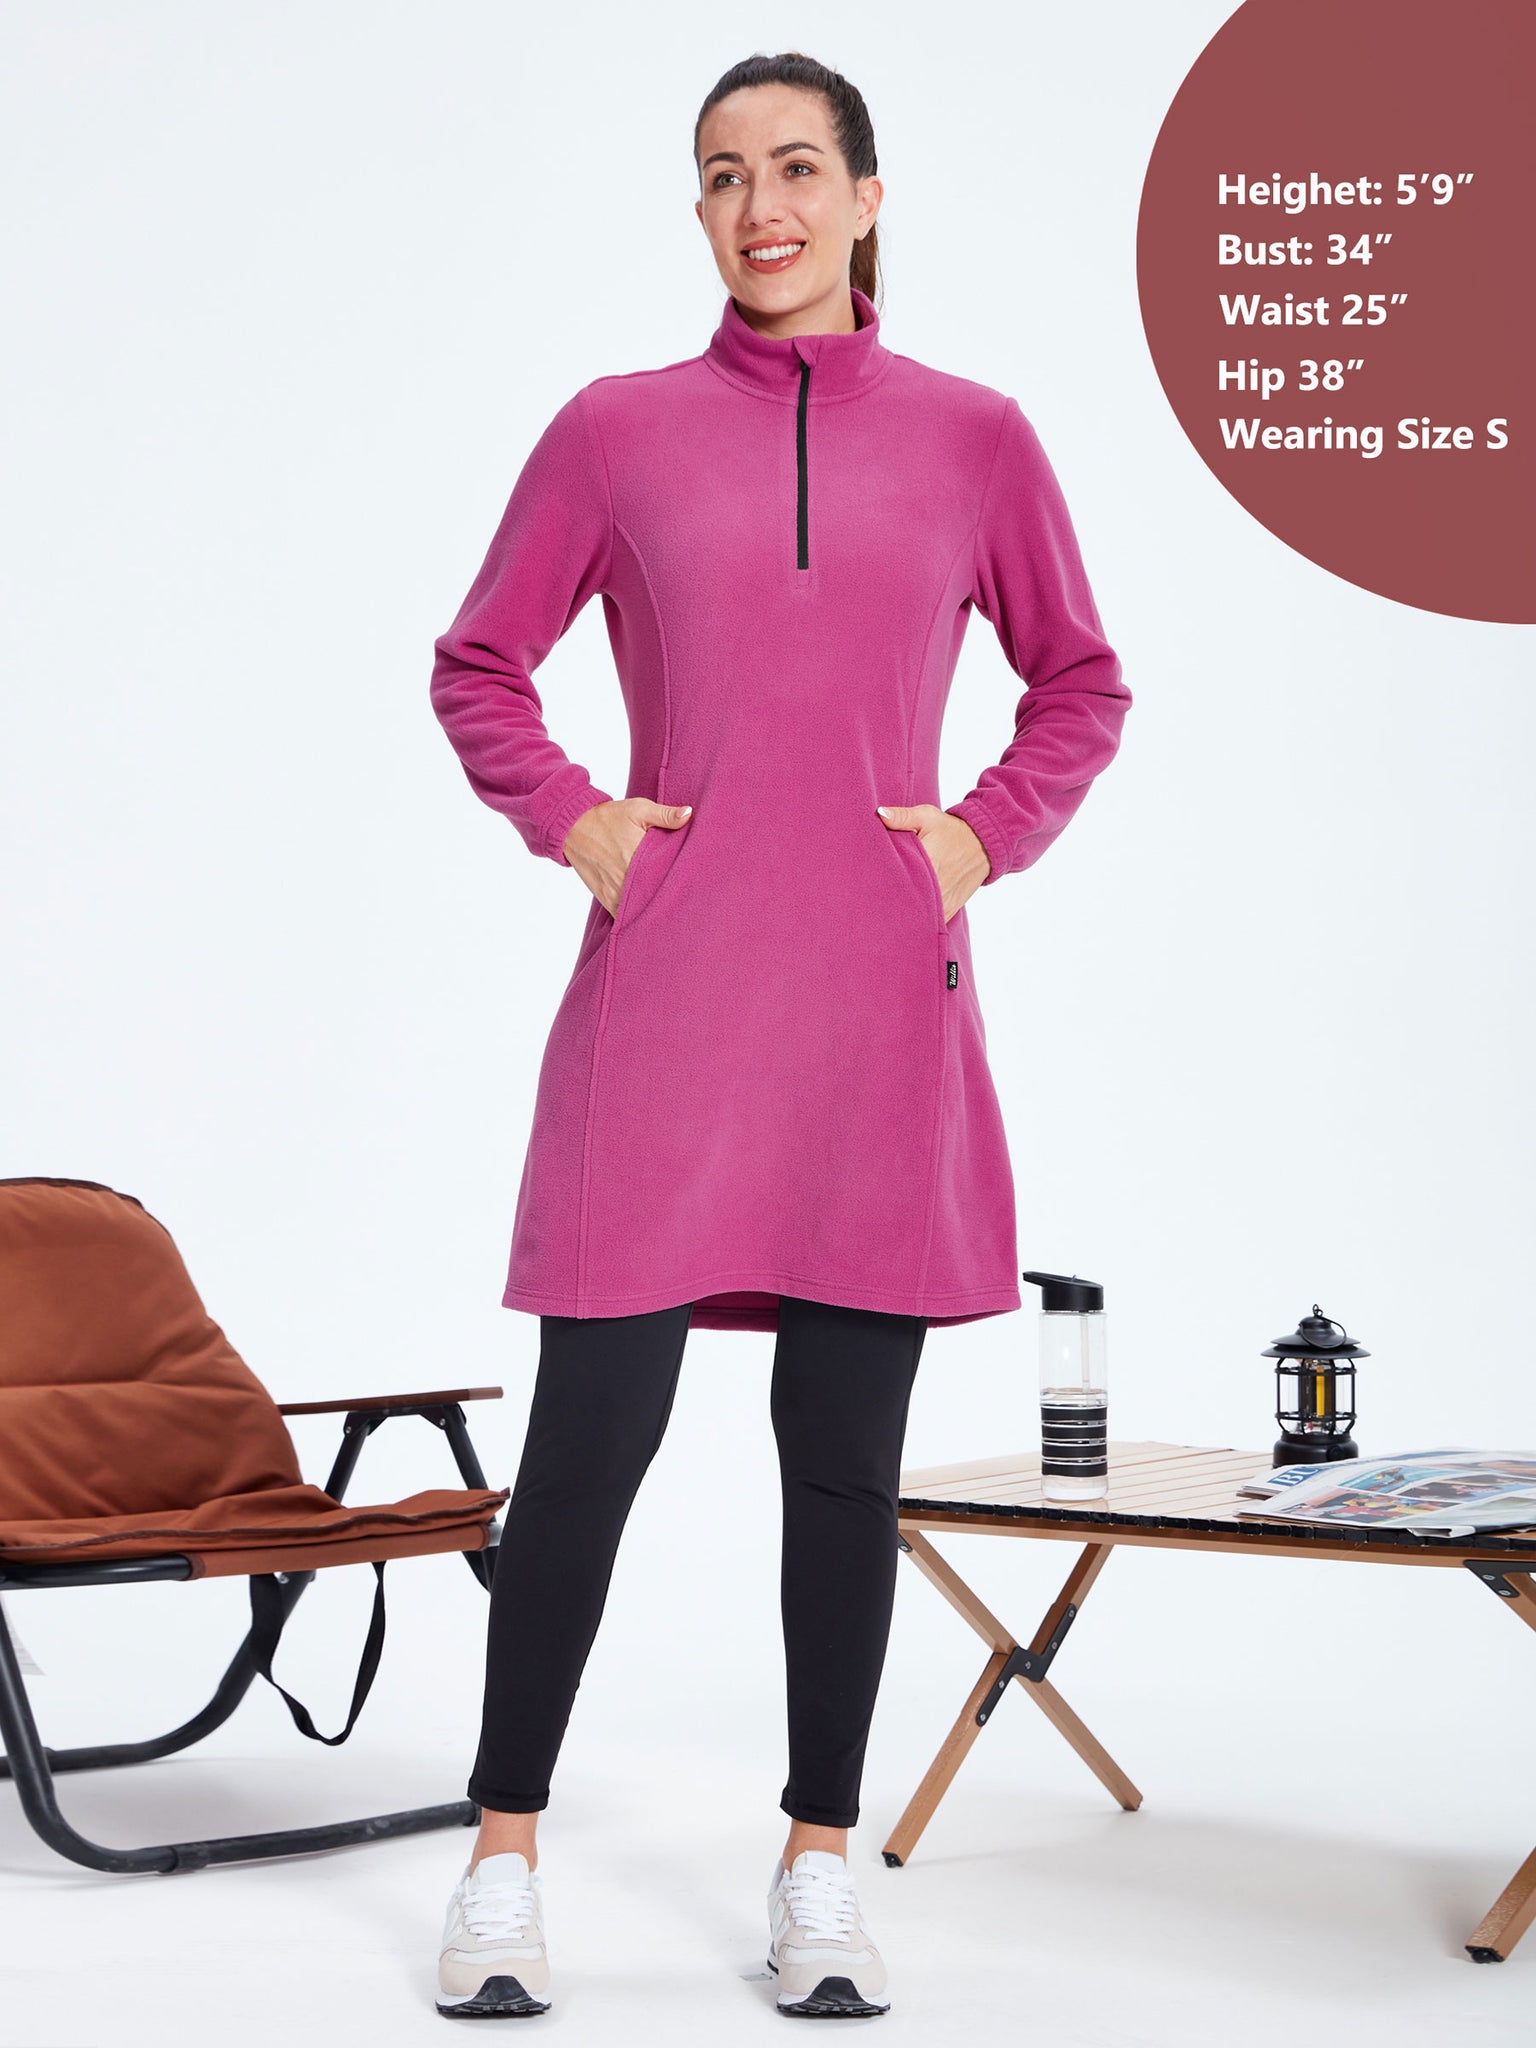 Women's Fleece Long-Sleeve Turtleneck Dress RosePink4